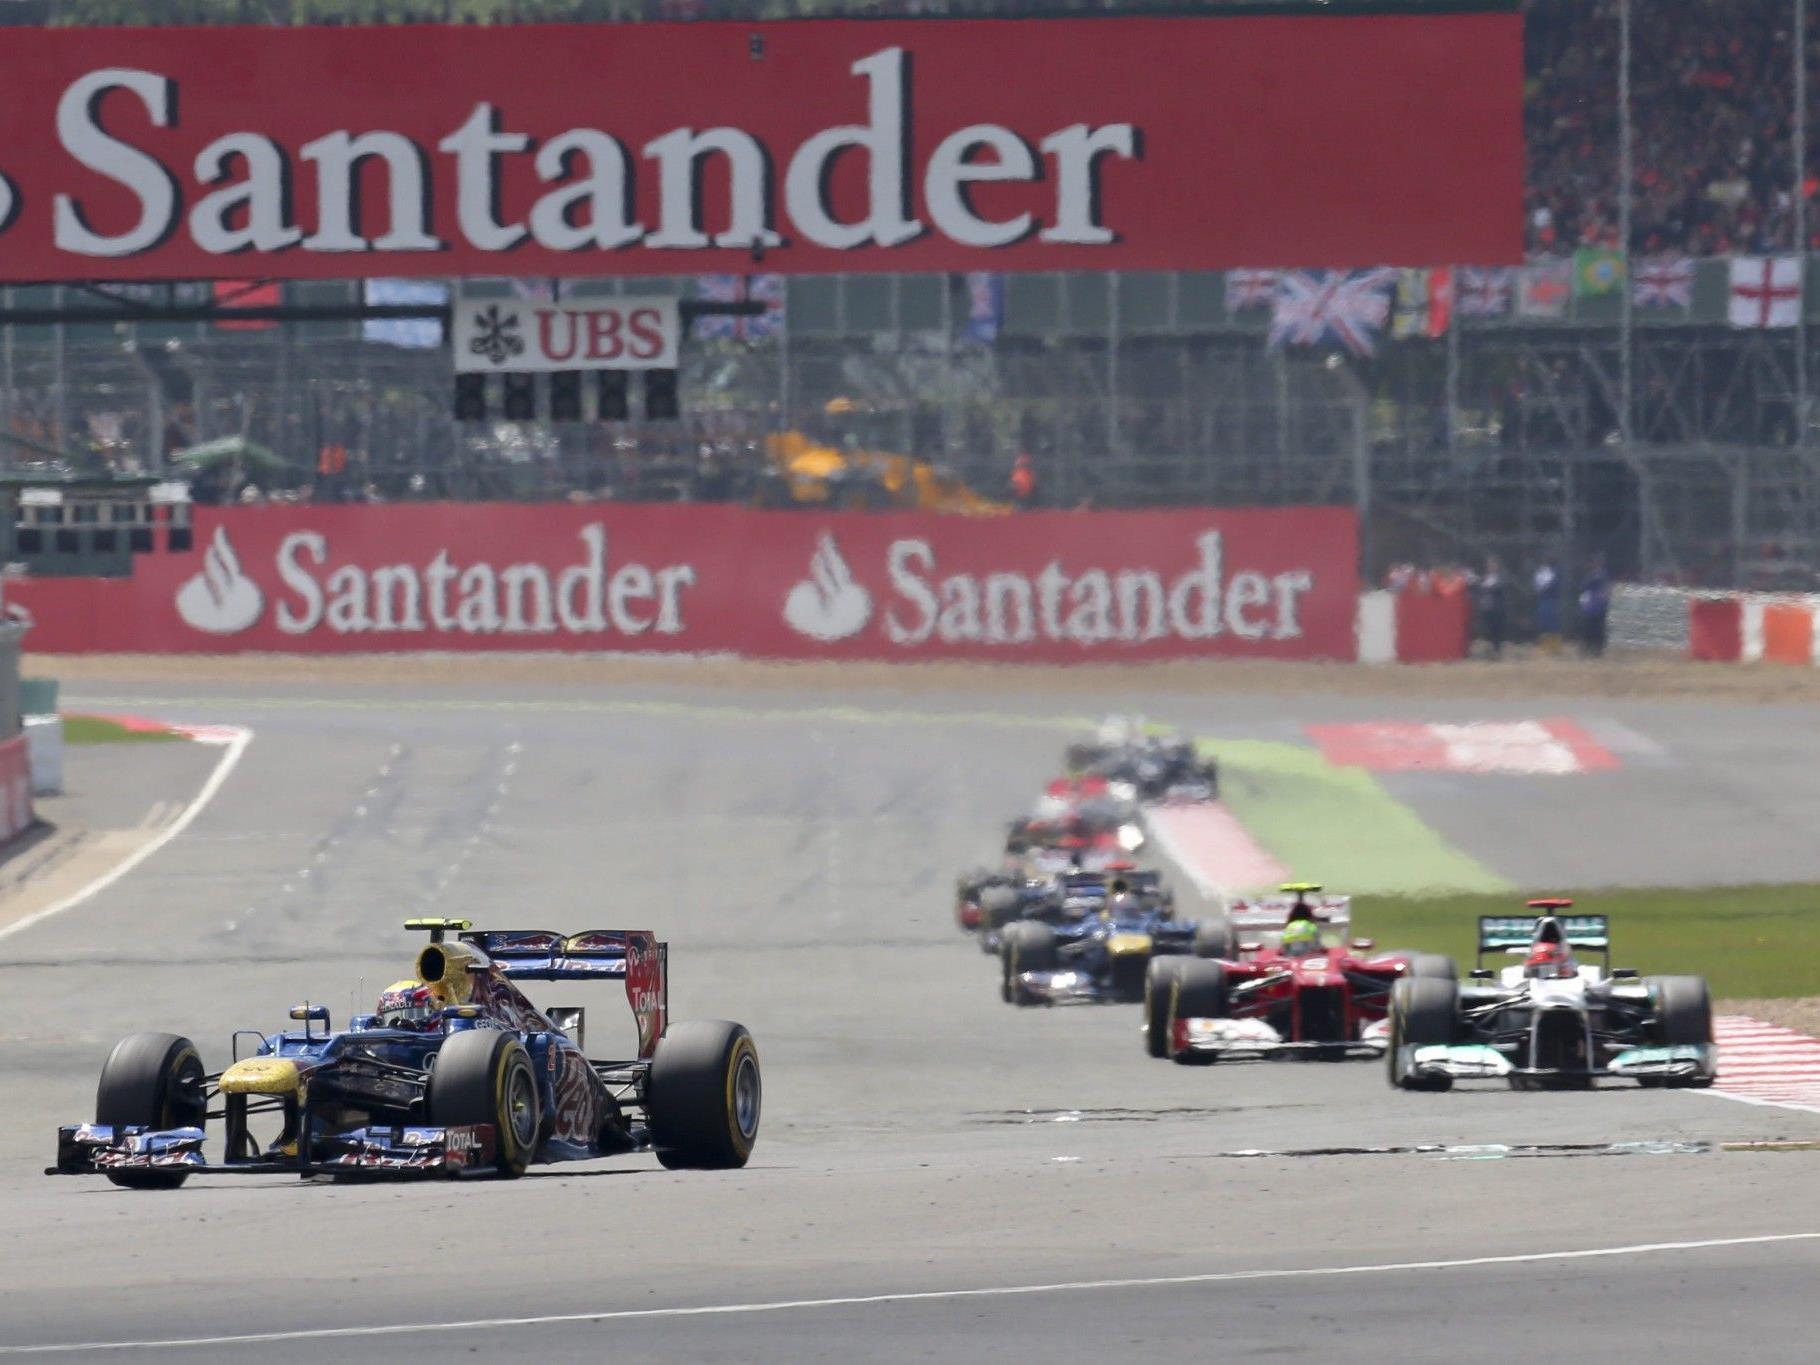 Zweiter Saisonsieg für Red-Bull-Pilot - Titelverteidiger Vettel hinter Alonso Dritter.